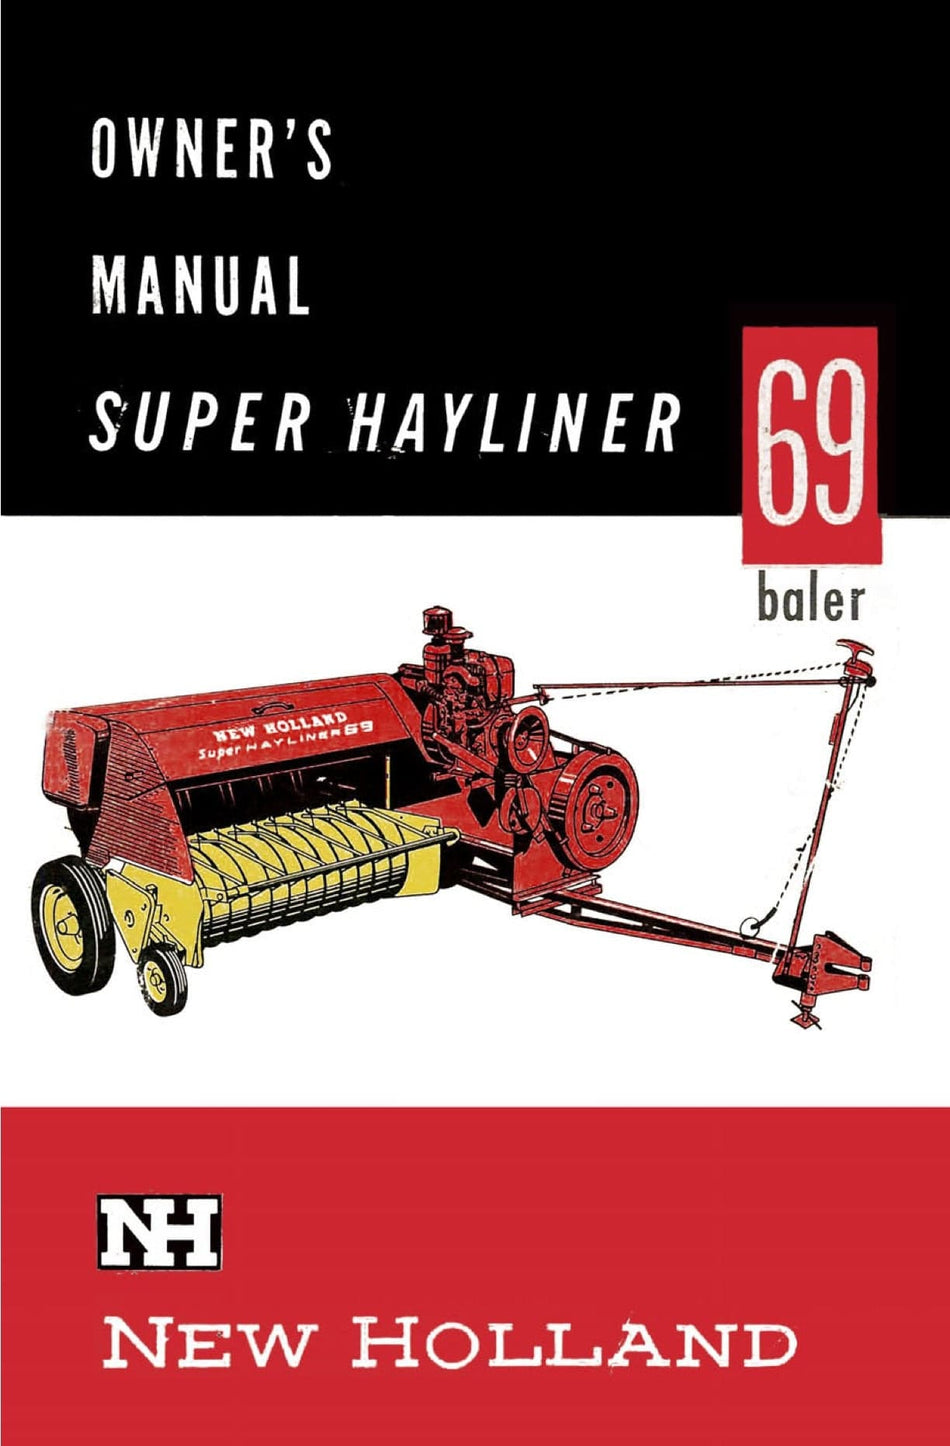 New Holland Super Hayliner 69 Baler - Owner's Manual - Ag Manuals